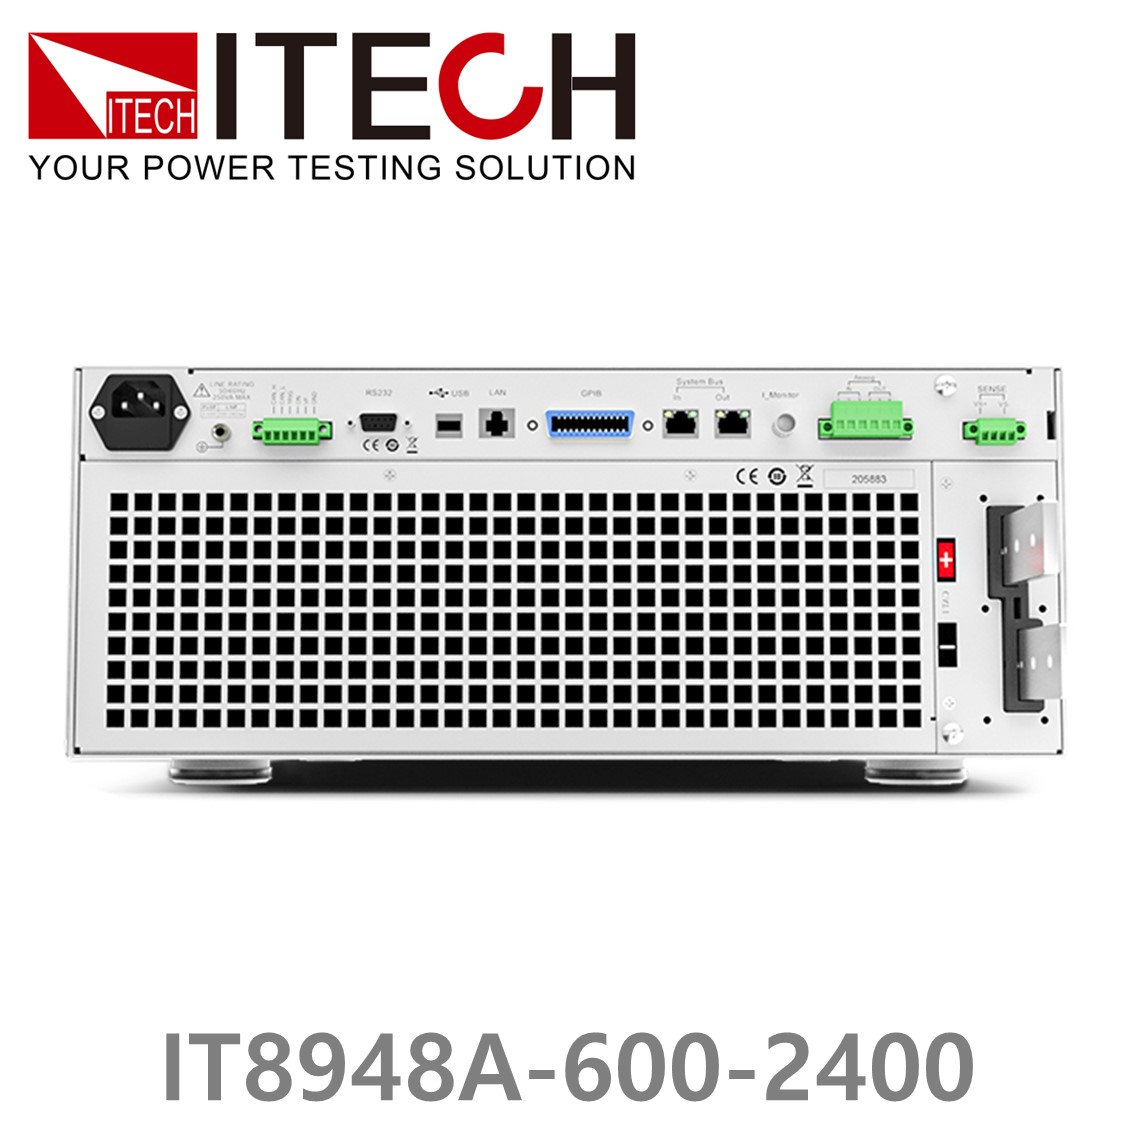 [ ITECH ] IT8948A-600-2400  고성능 고전력 DC 전자로드 600V/2400A/48kW (37U)